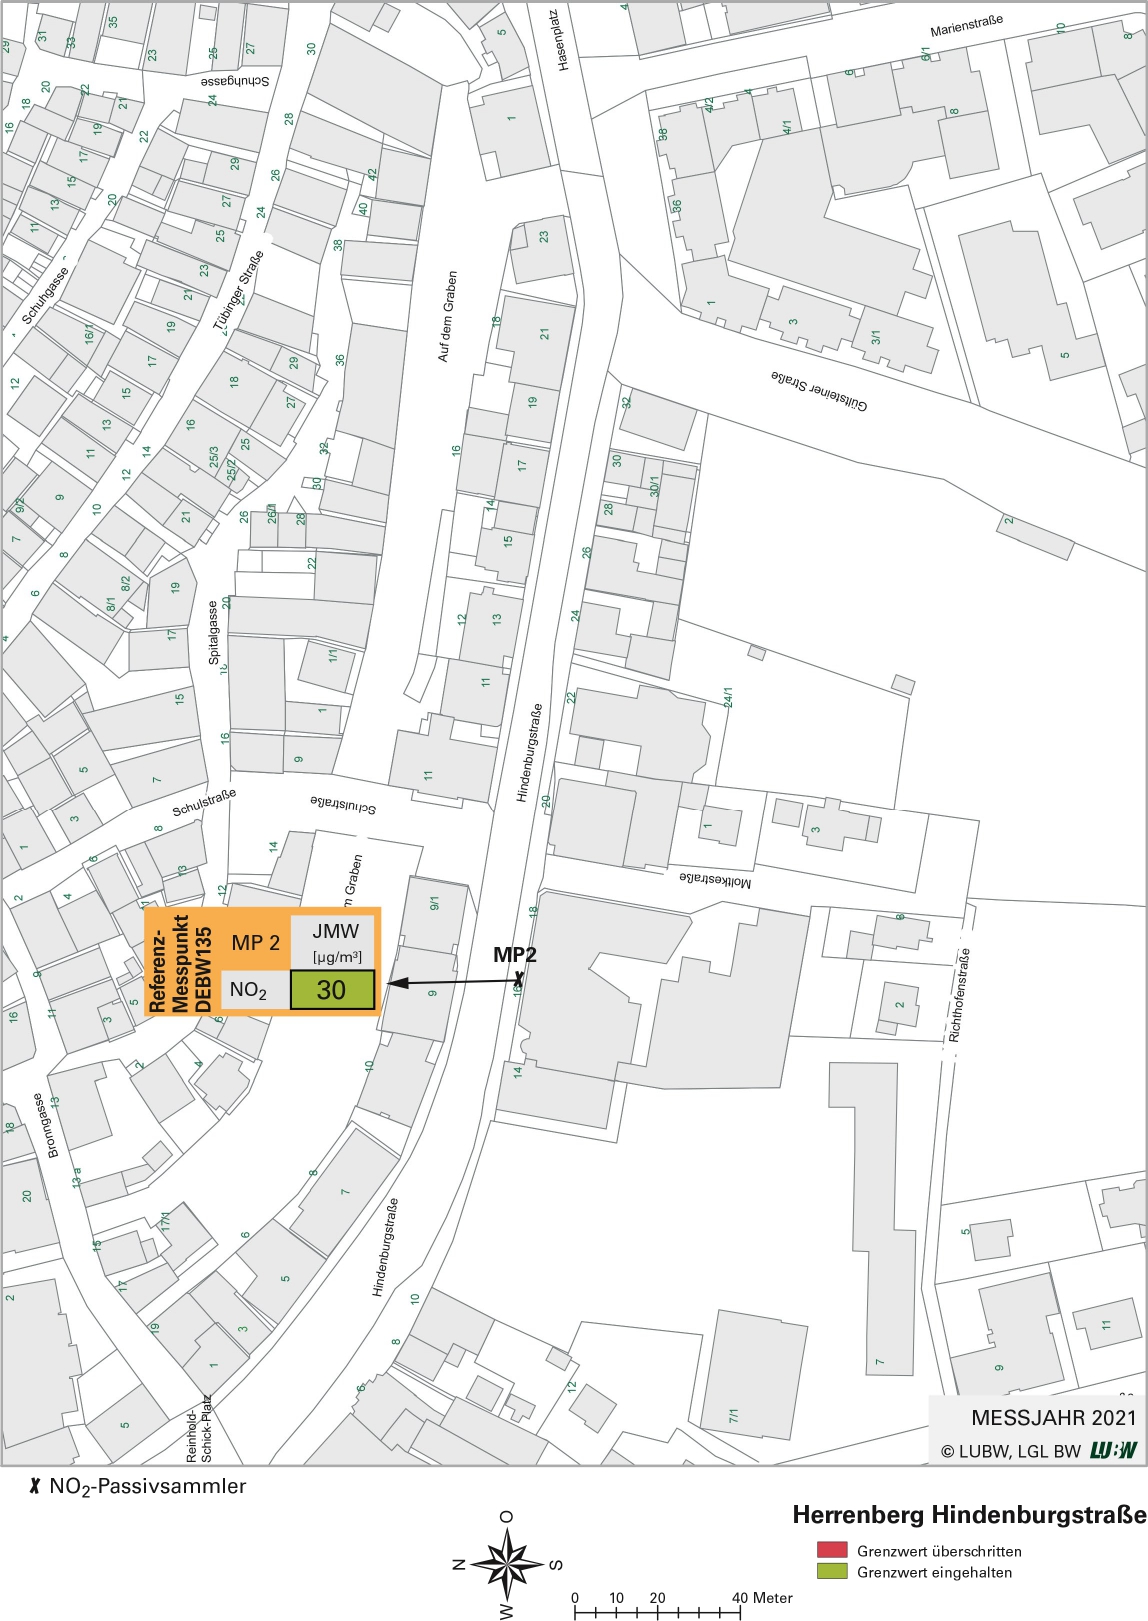 Kartenausschnitt, der die Lage der Messstelle Herrenberg Hindenburgstraße (Referenzmesspunkt) zeigt. Dargestellt ist zudem das Ergebnis (Jahresmittelwert 2021) der gemessenen Stickstoffdioxidbelastung.